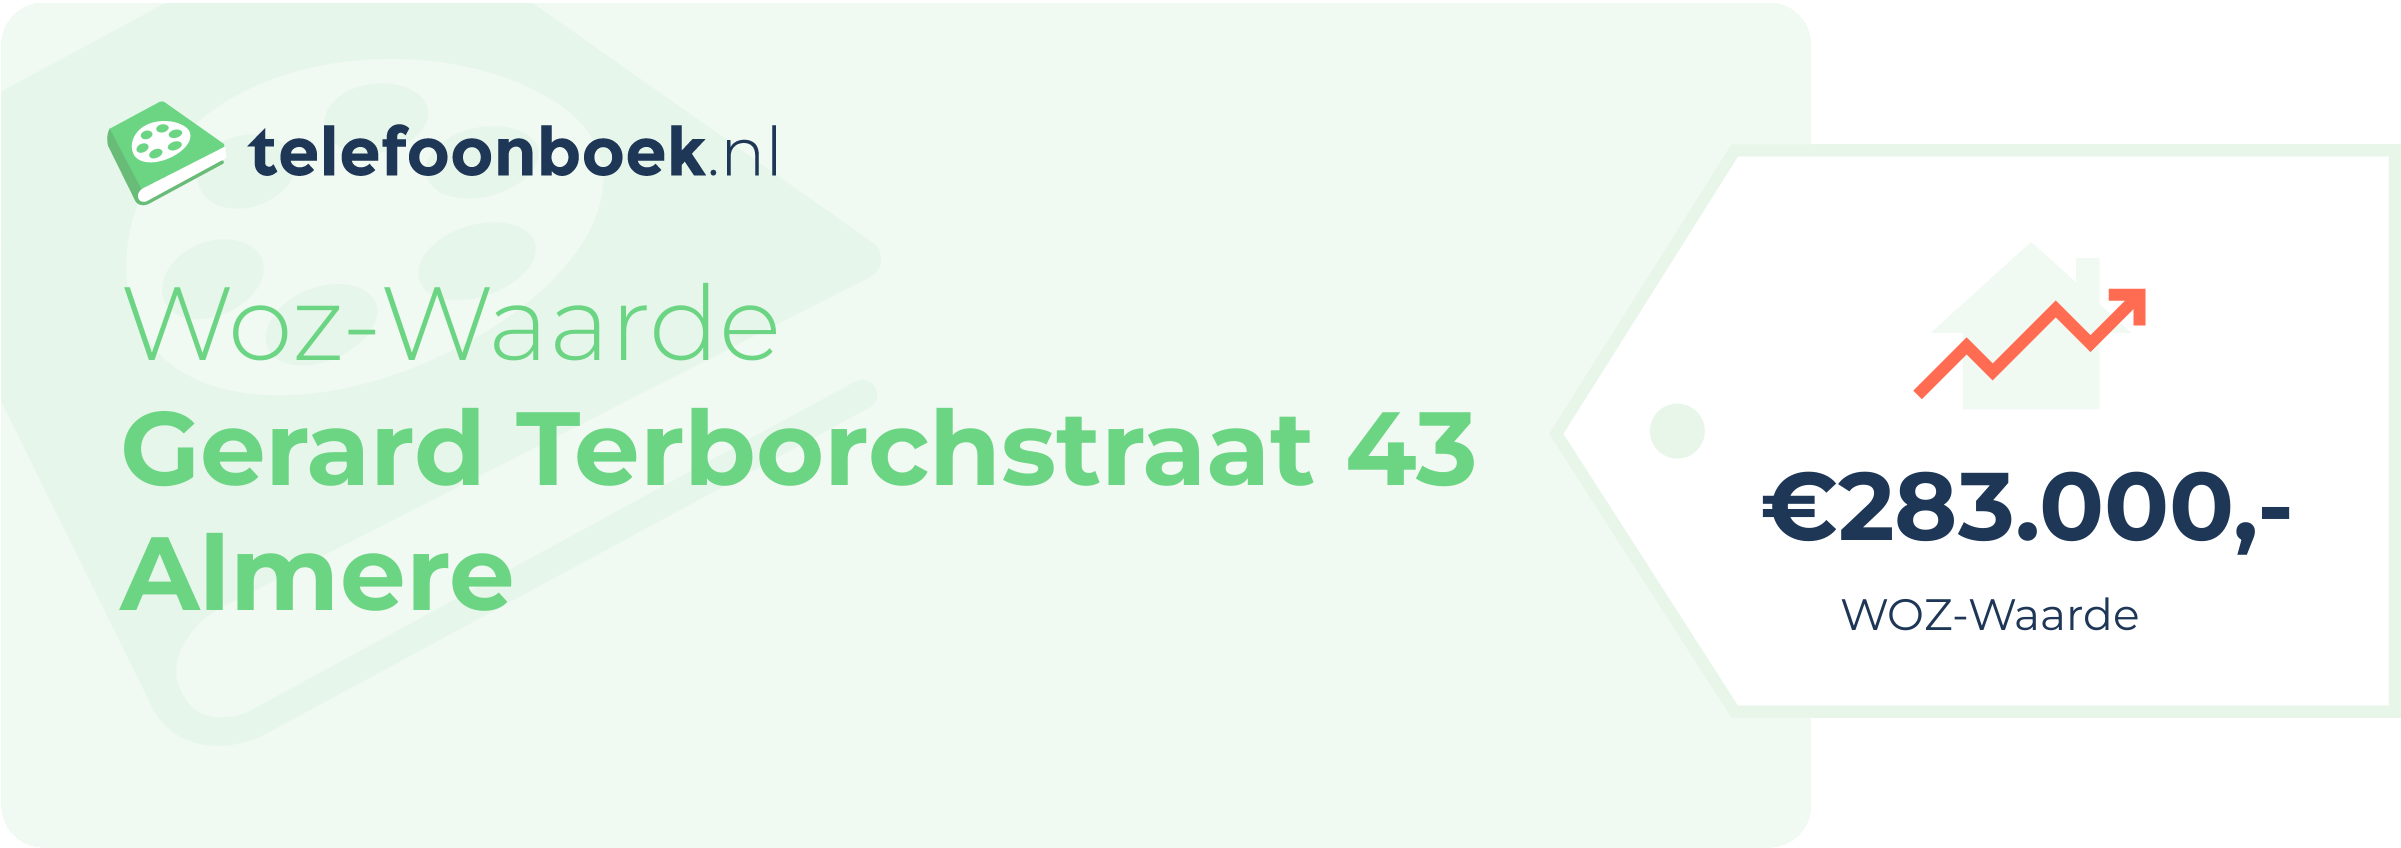 WOZ-waarde Gerard Terborchstraat 43 Almere